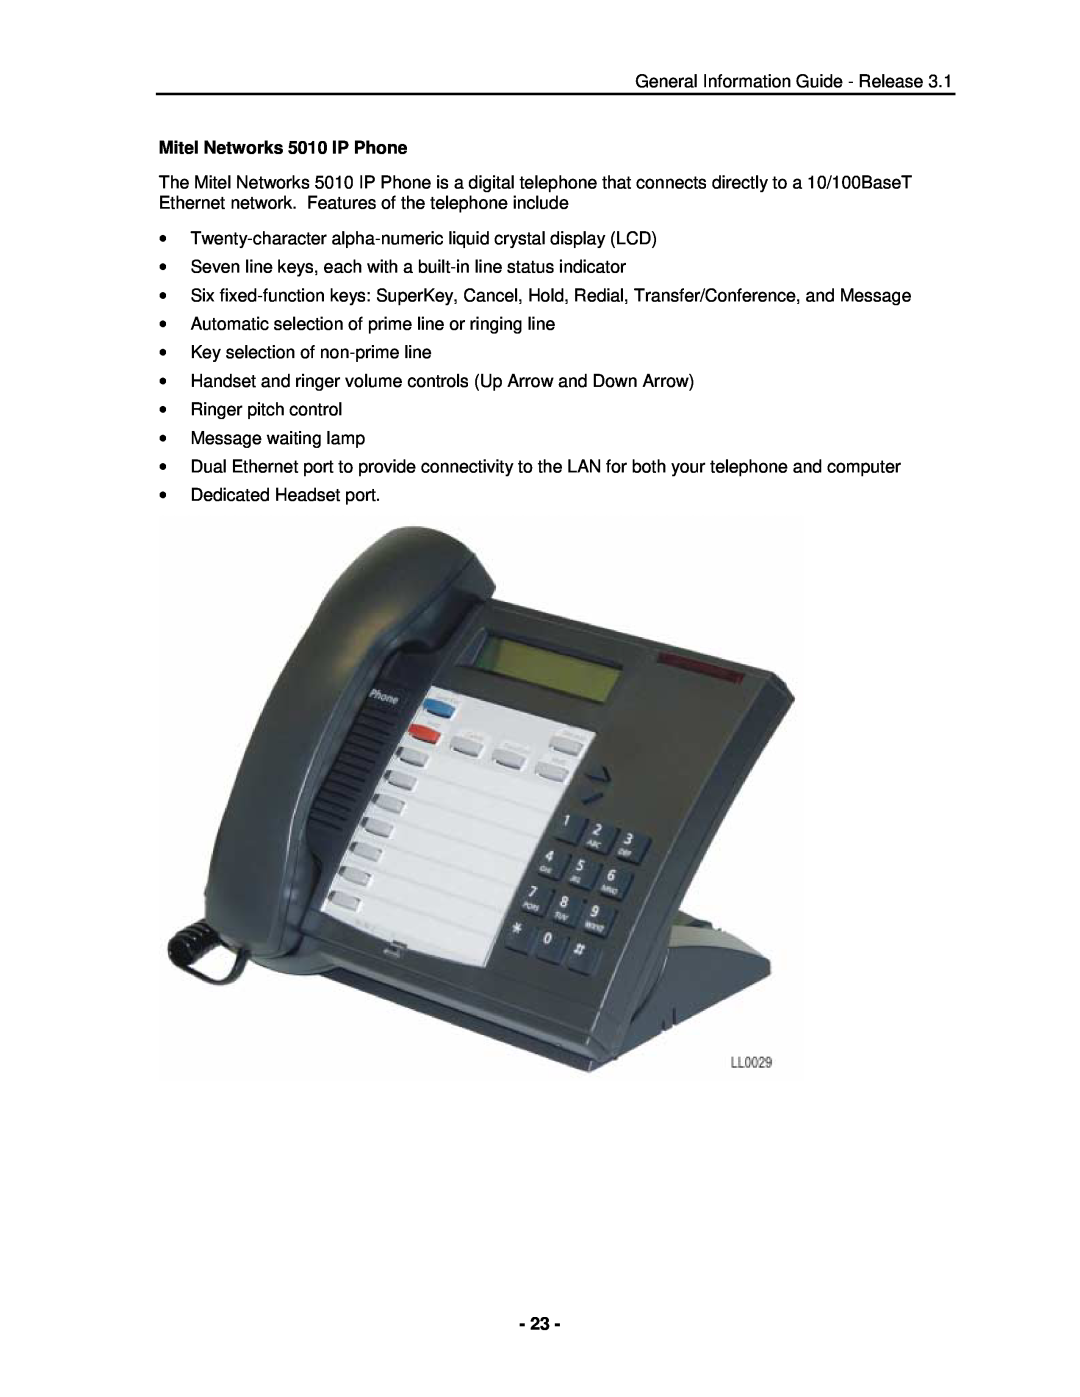 Mitel 3300 manual Mitel Networks 5010 IP Phone 